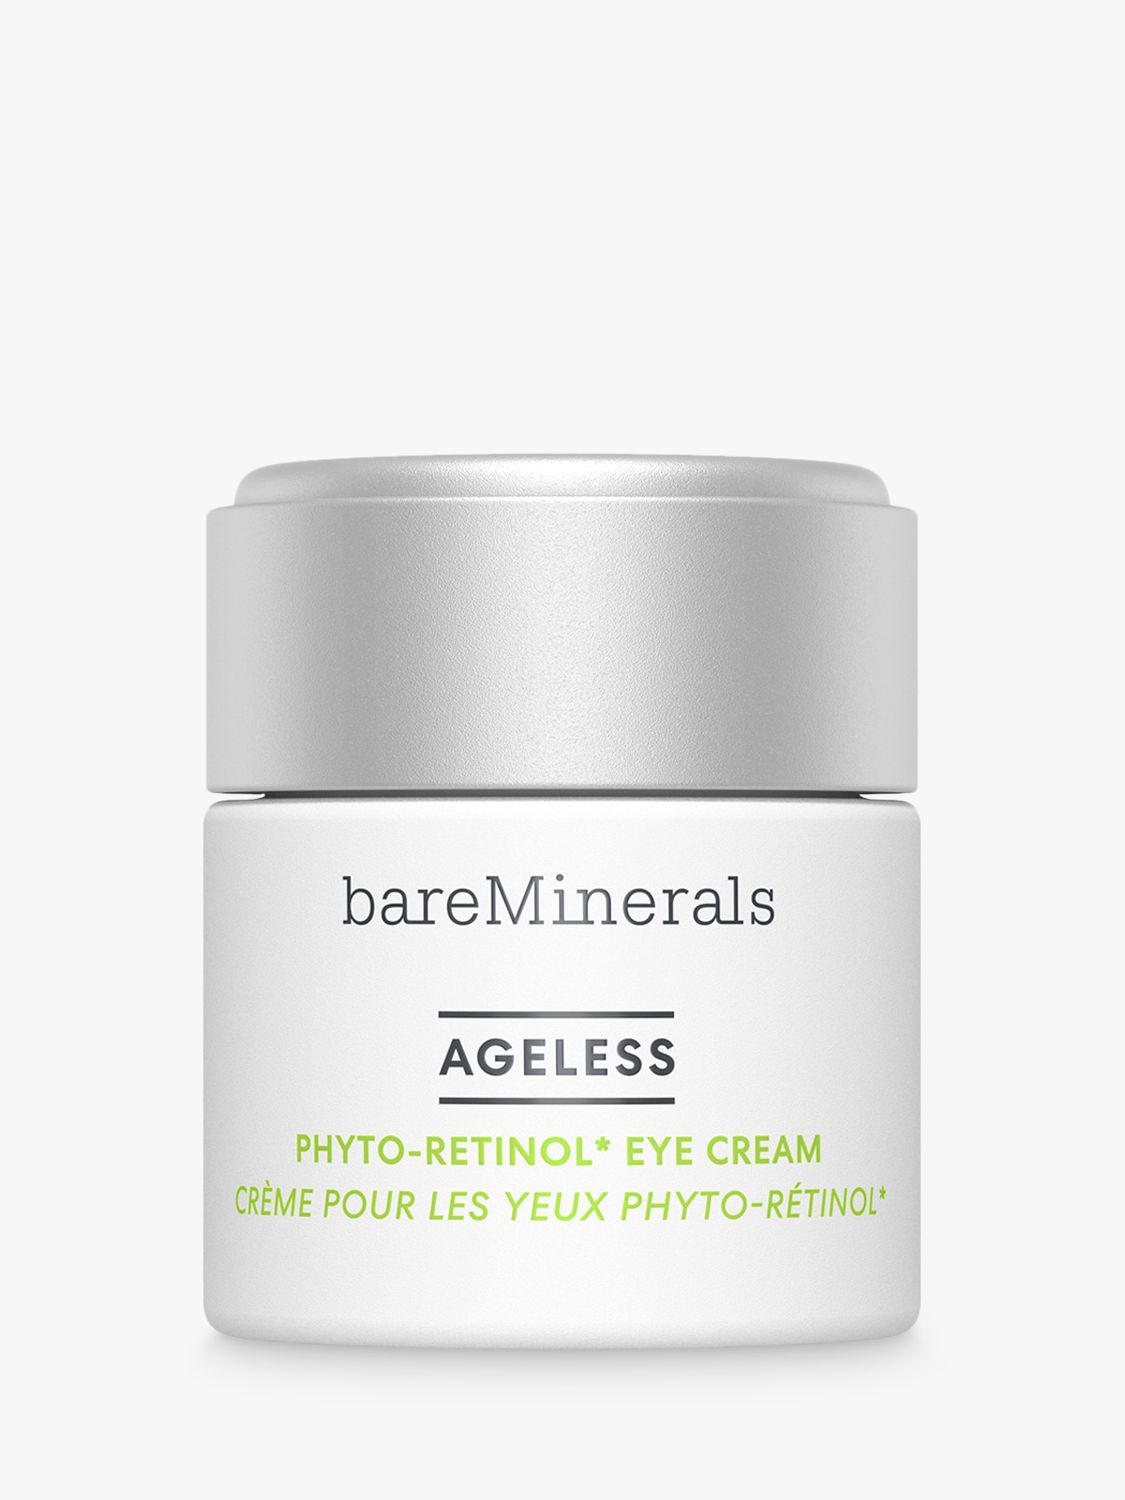 bareMinerals AGELESS Phyto-Retinol Eye Cream, 15ml 1